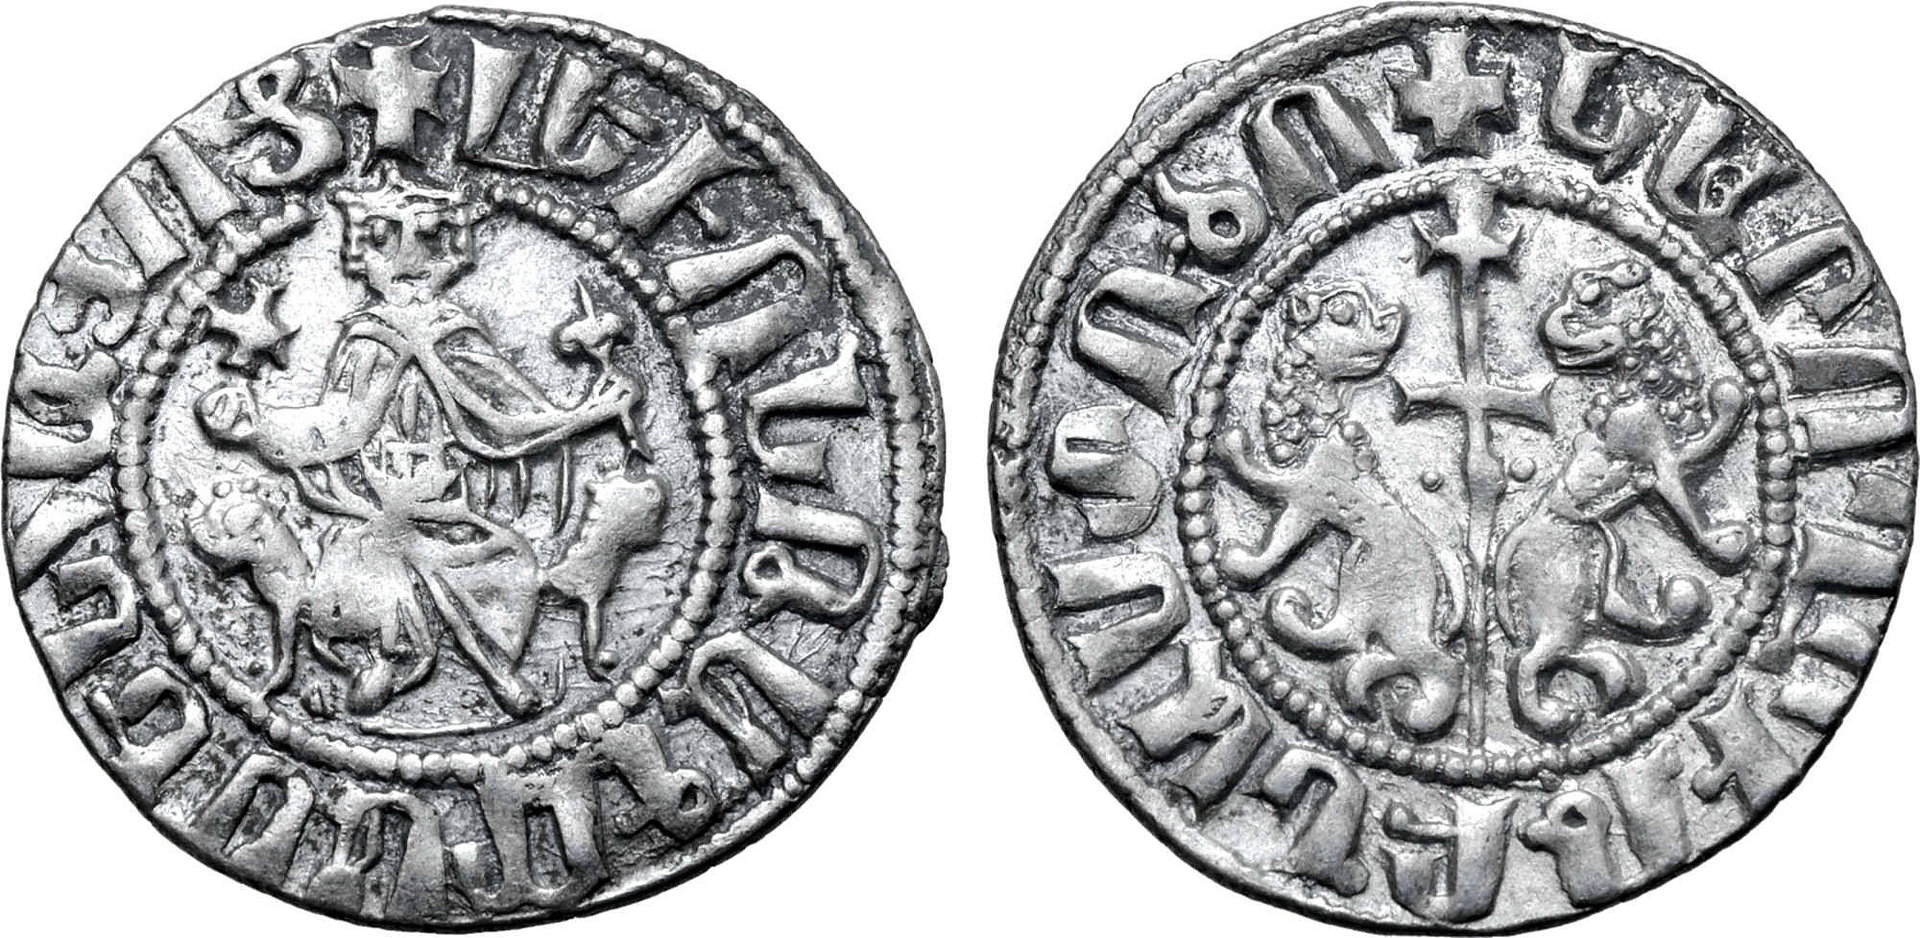 Armenia, Levon I, AD 1199-1219, Sis Mint, AR Tram, 3.01 gm, 22 mm, 10 h.jpg